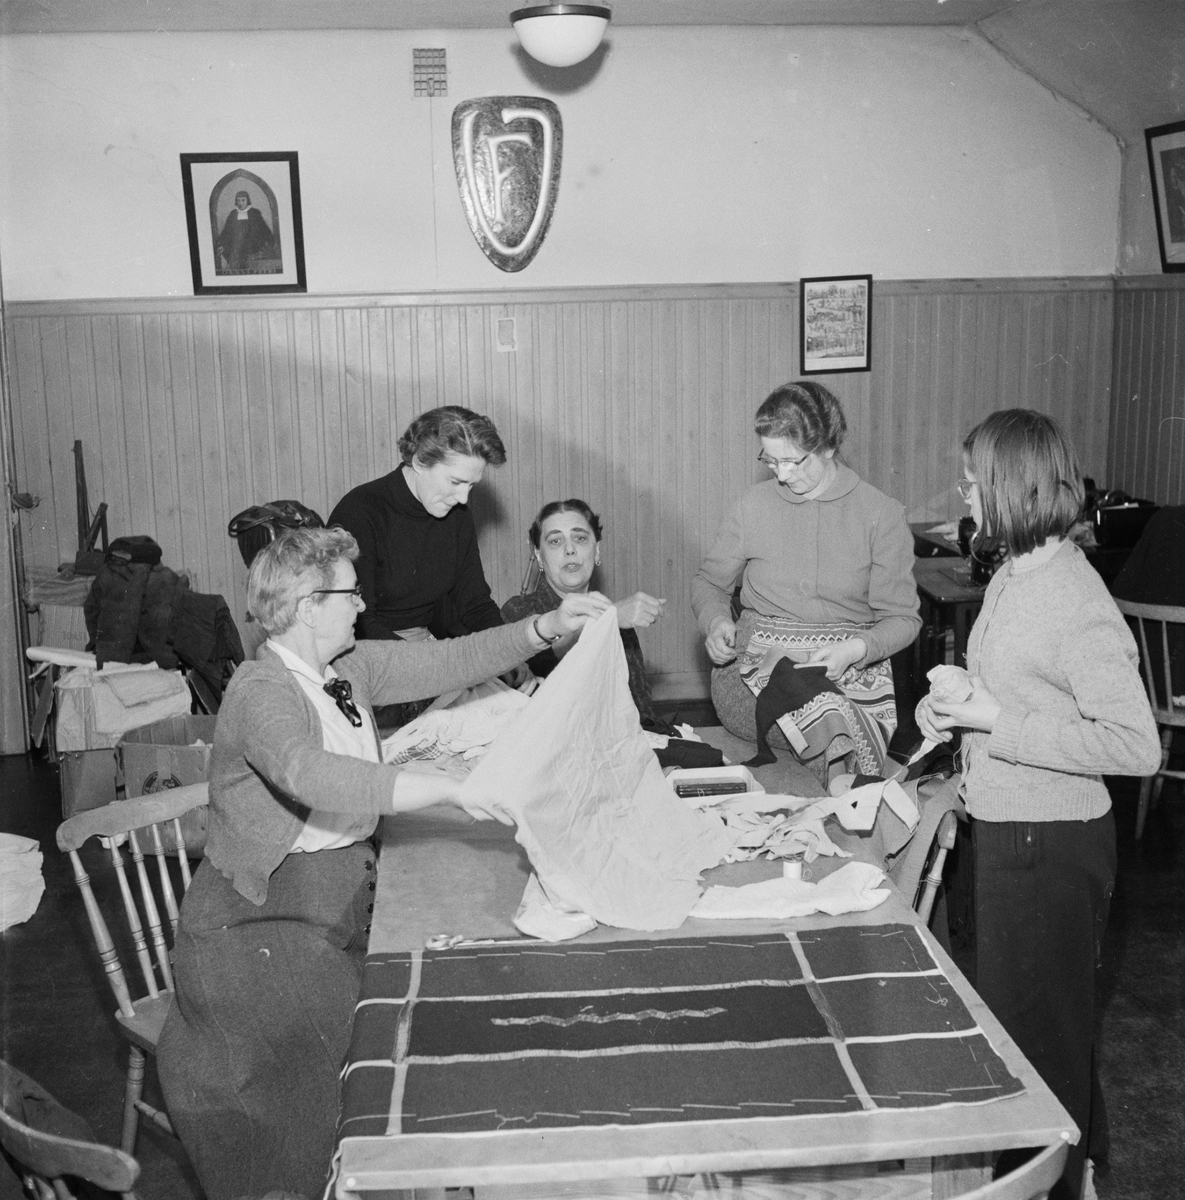 Vindhems syförening klipper mattrasor, Uppsala 1955